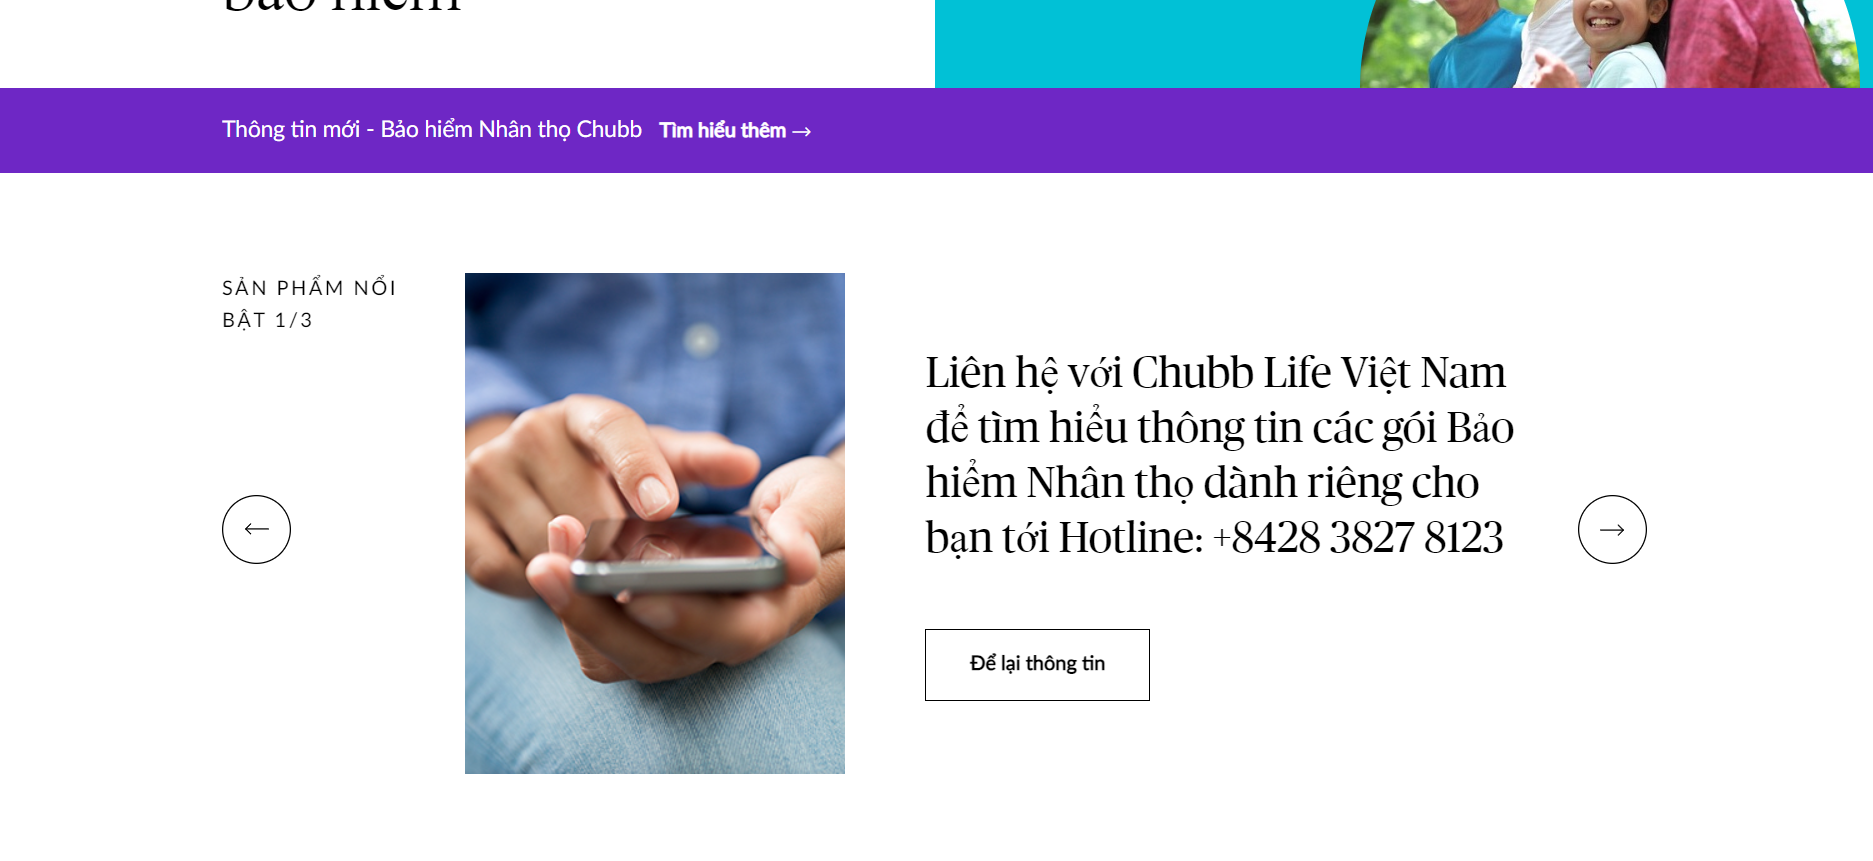 Hơn một nửa tài sản của Công ty TNHH Bảo hiểm Nhân thọ Chubb Việt Nam dành cho trái phiếu (Ảnh chụp màn hình)